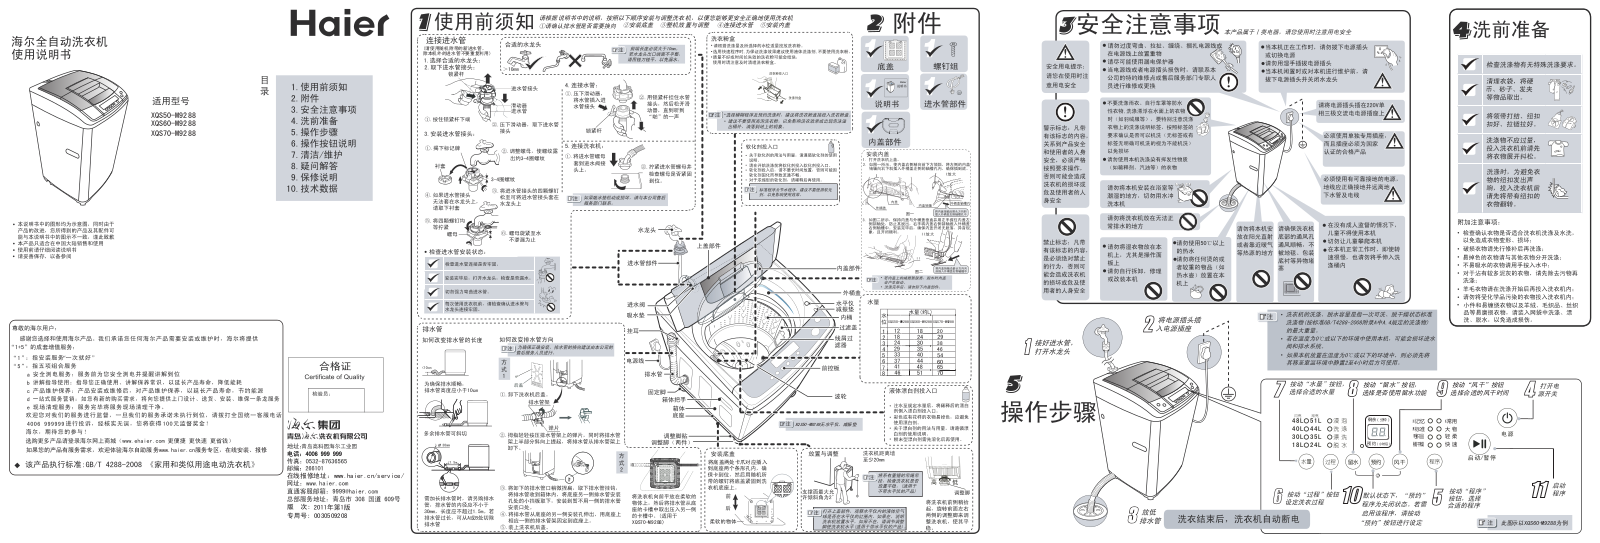 Haier XQS50-M9288, XQS60-M9288, XQS70-M9288 User Manual